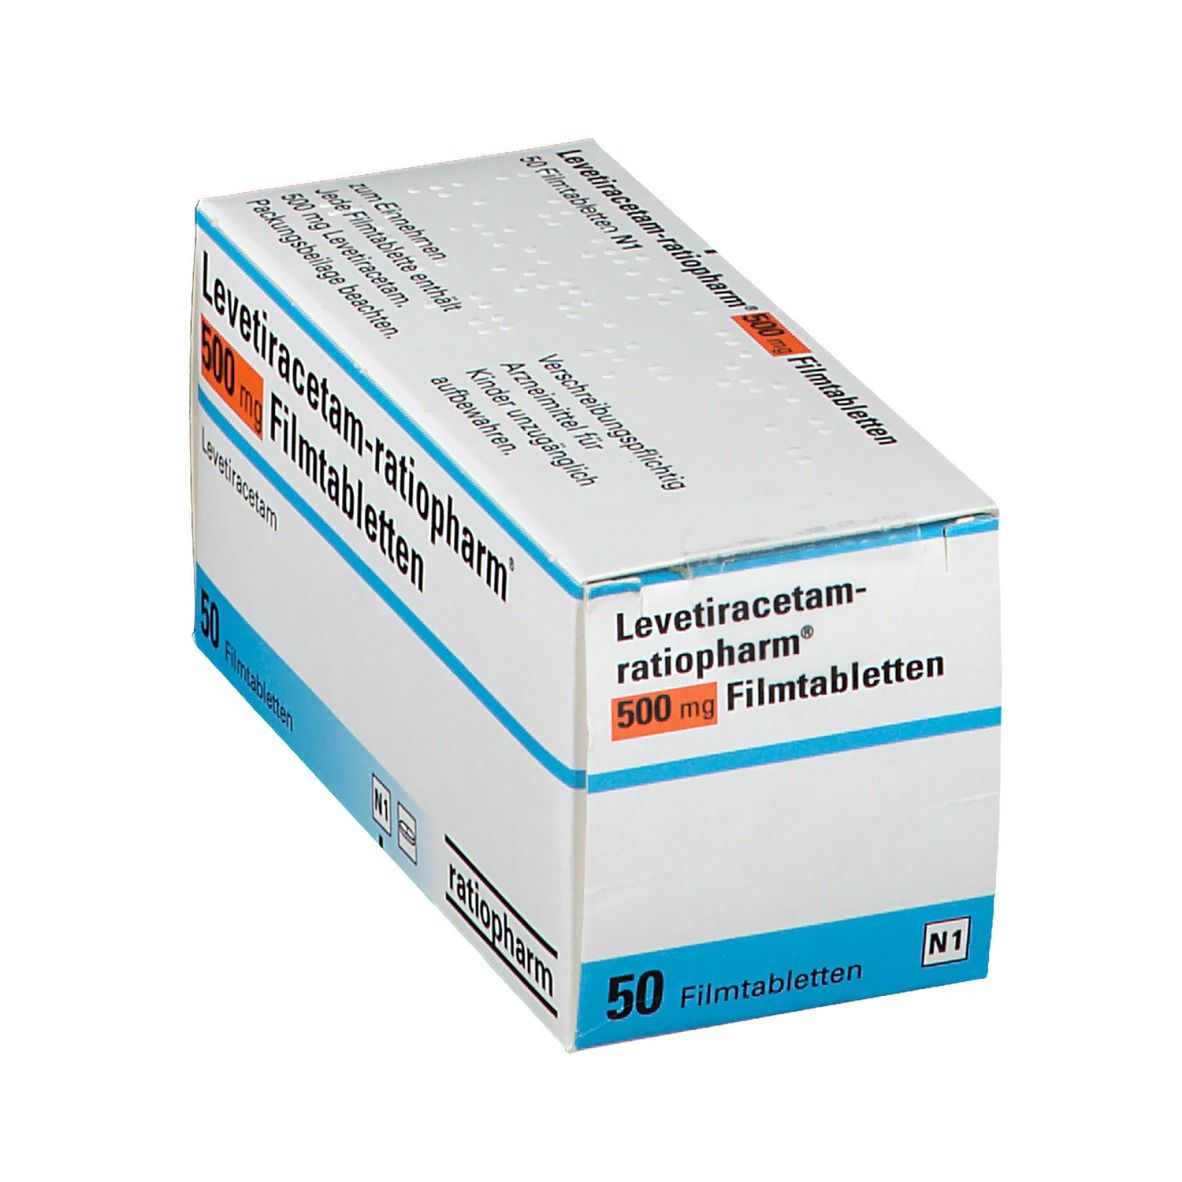 Levetiracetam-ratiopharm® 500 mg